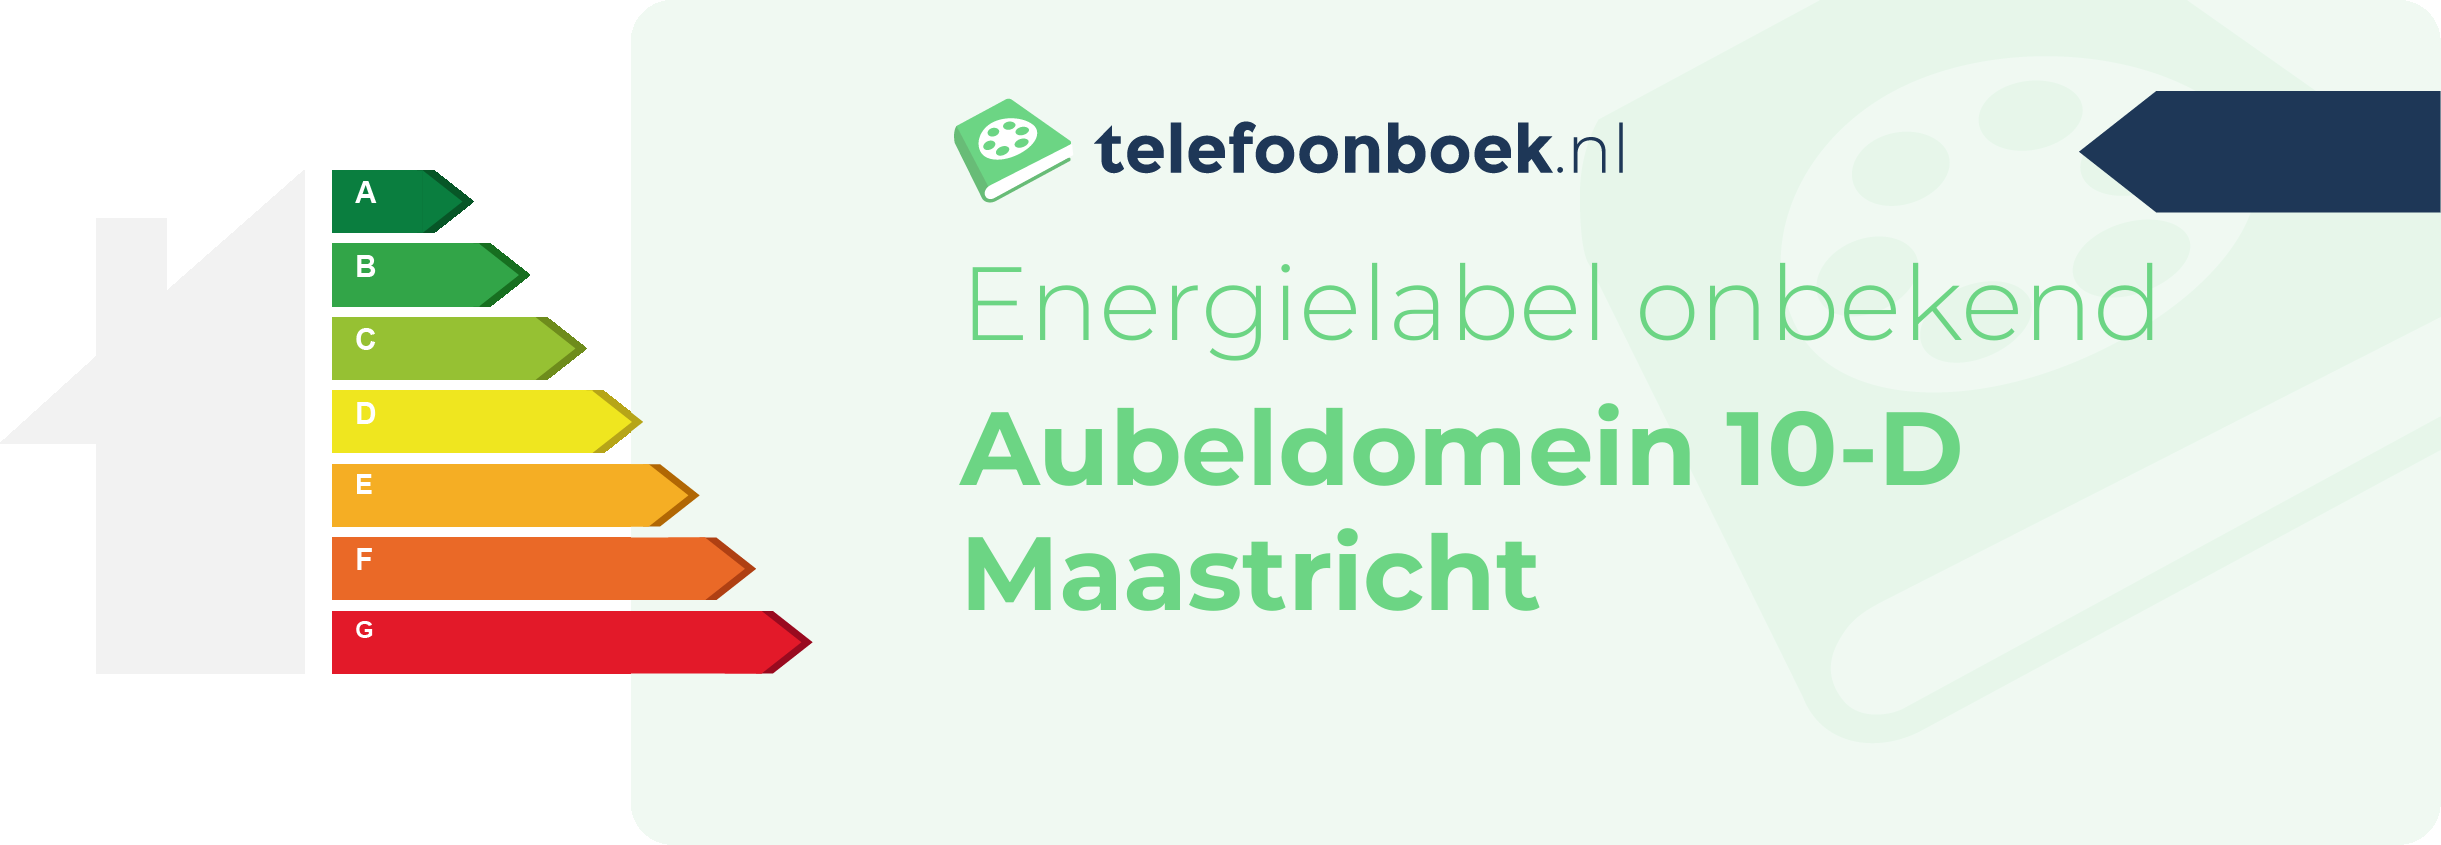 Energielabel Aubeldomein 10-D Maastricht